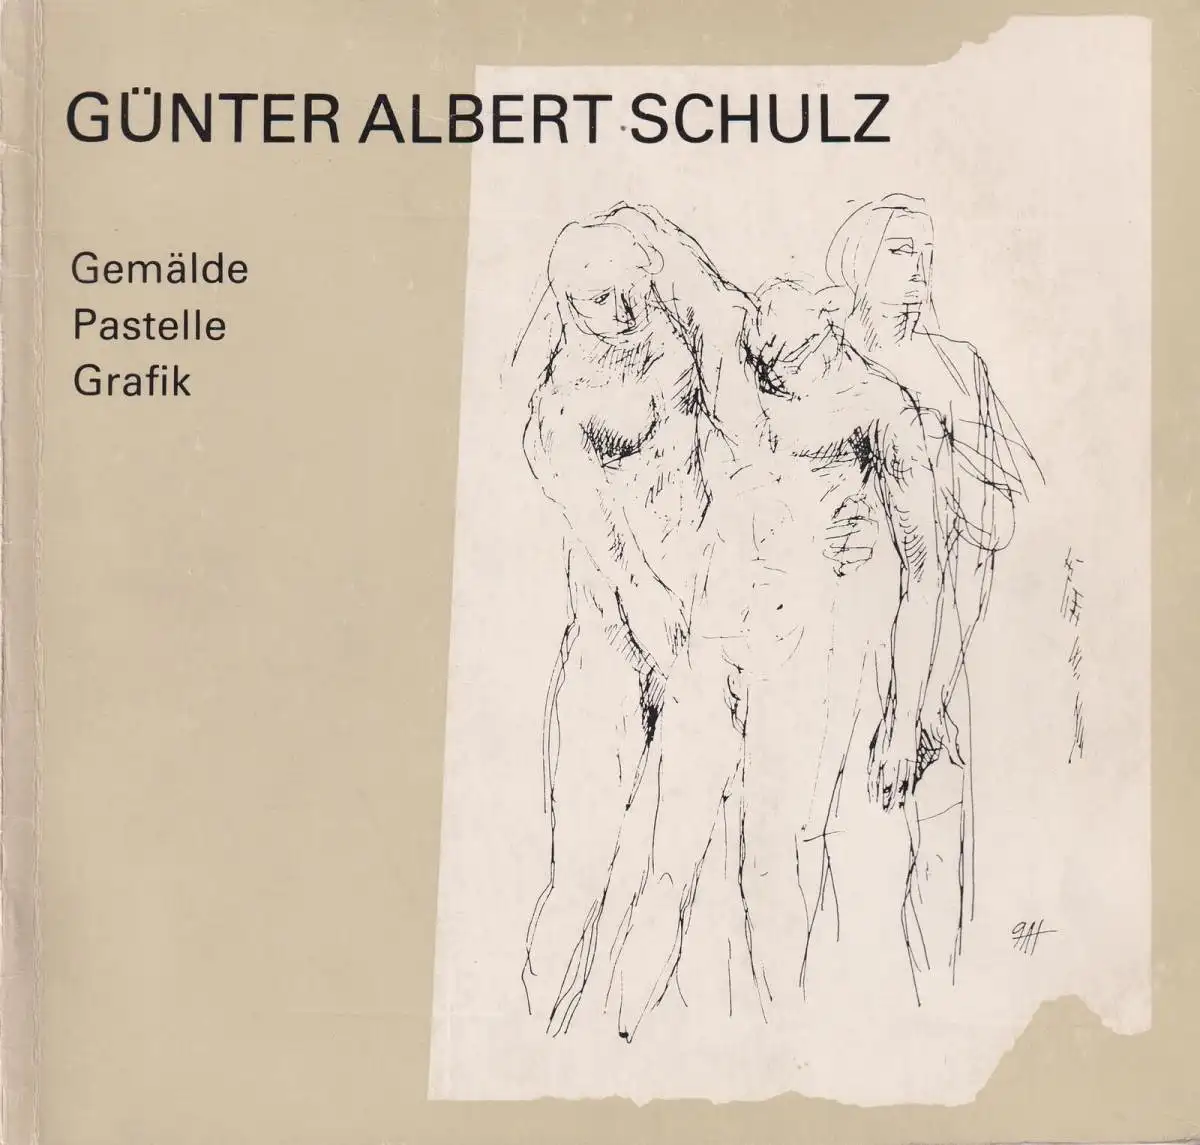 Buch: Günter Albert Schulz, Gemälde, Pastelle, Grafik, 1985, gut